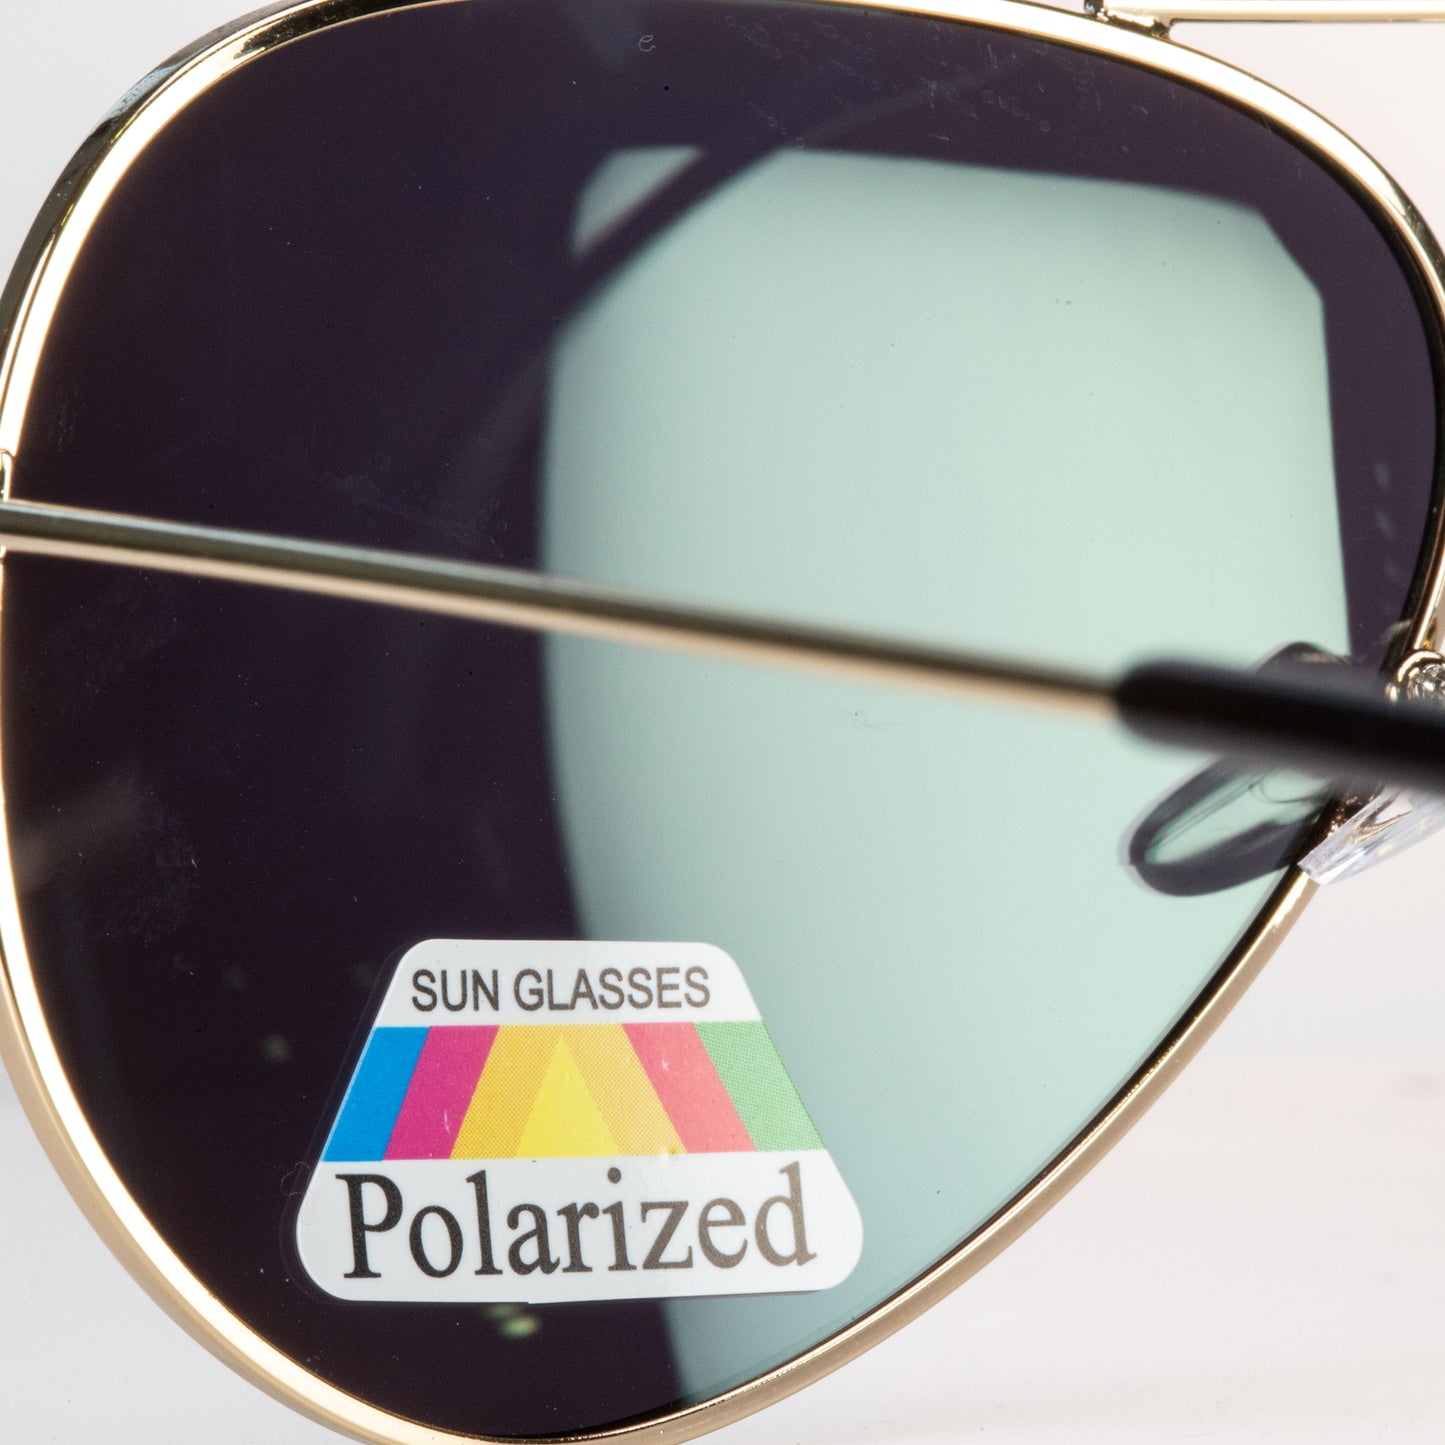 Emporia Italy - Pilóta Napszemüveg "DZSUNGEL", polarizált UV szűrős napszemüveg tokkal és tisztítókendővel, sárgászöld lencsék, arany színű keret